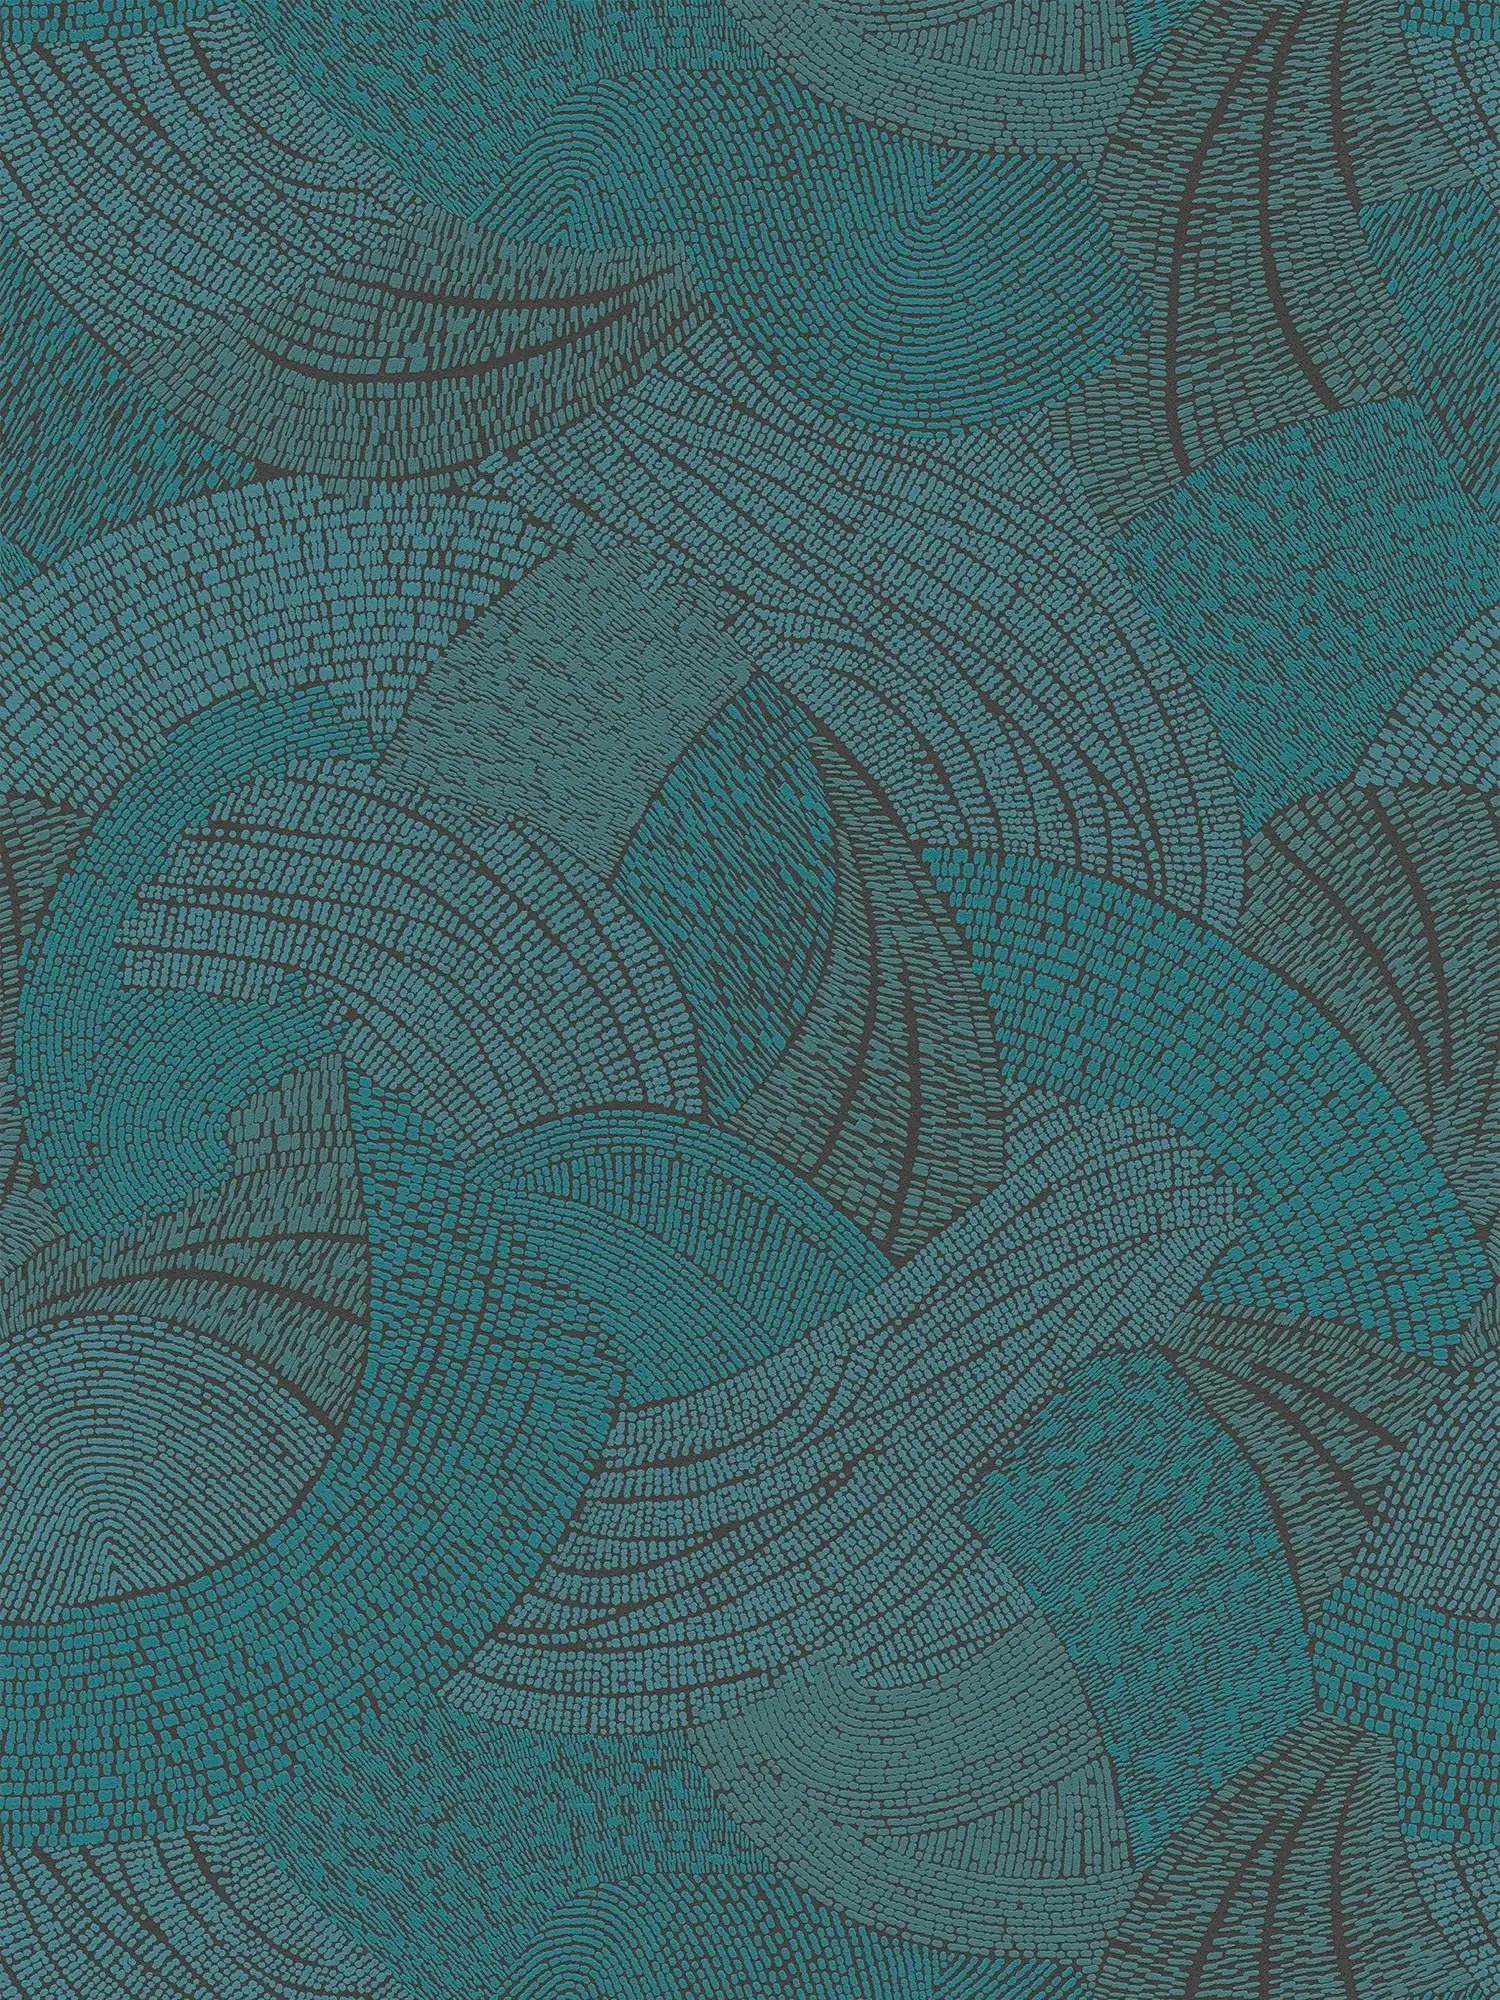 Vliestapete mit abstraktem Wellenmuster – Blau, Grün, Schwarz
